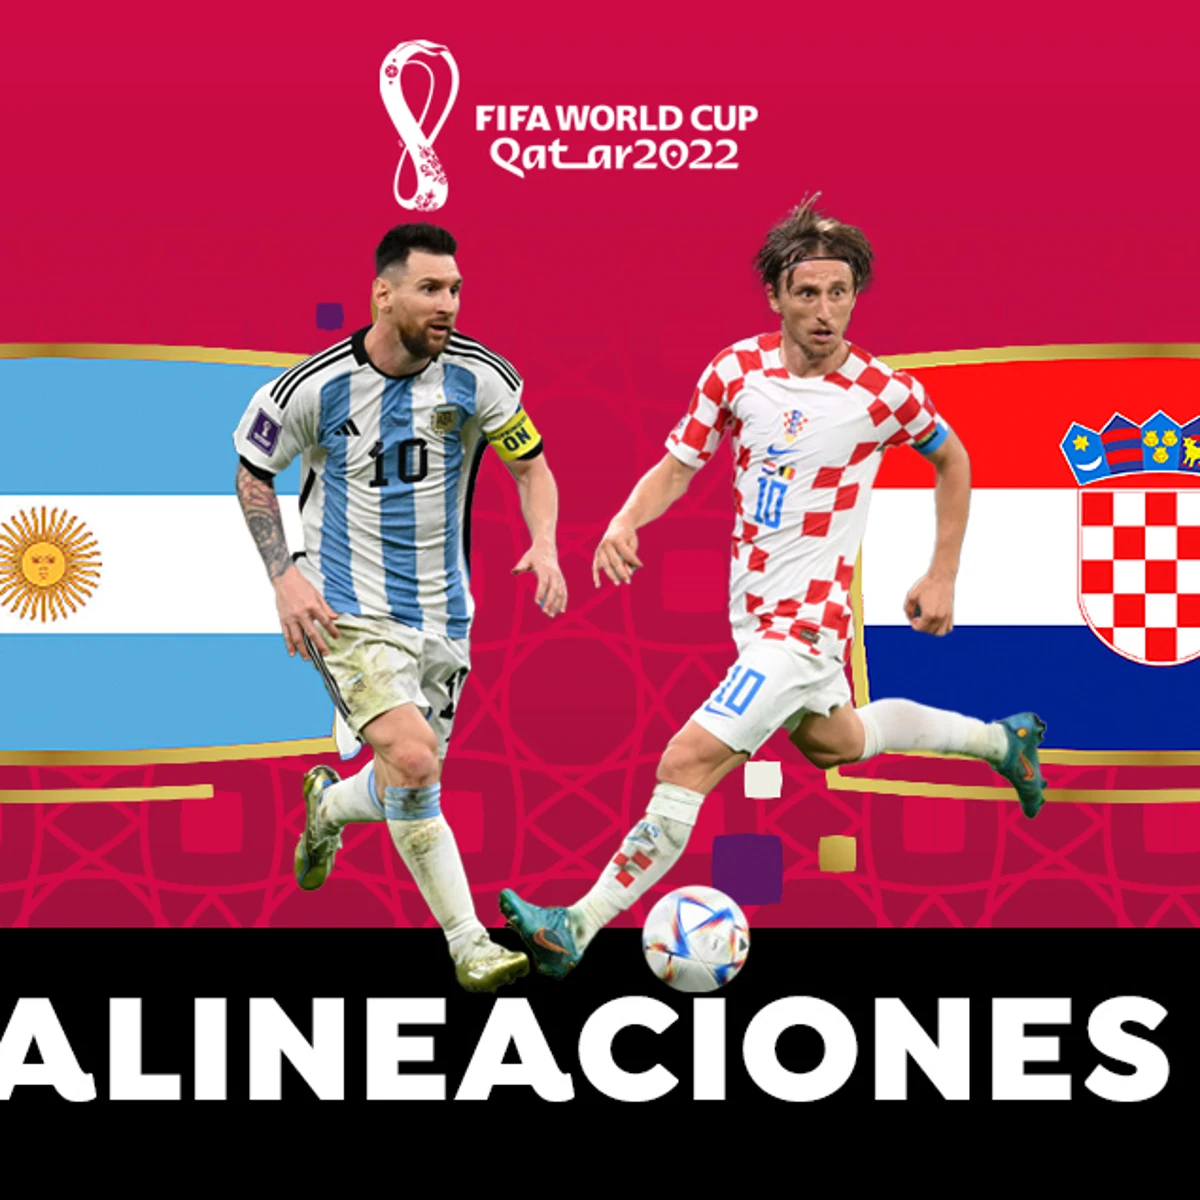 Alineaciones OFICIALES de Argentina Croacia en el partido de hoy de las del de Qatar 2022